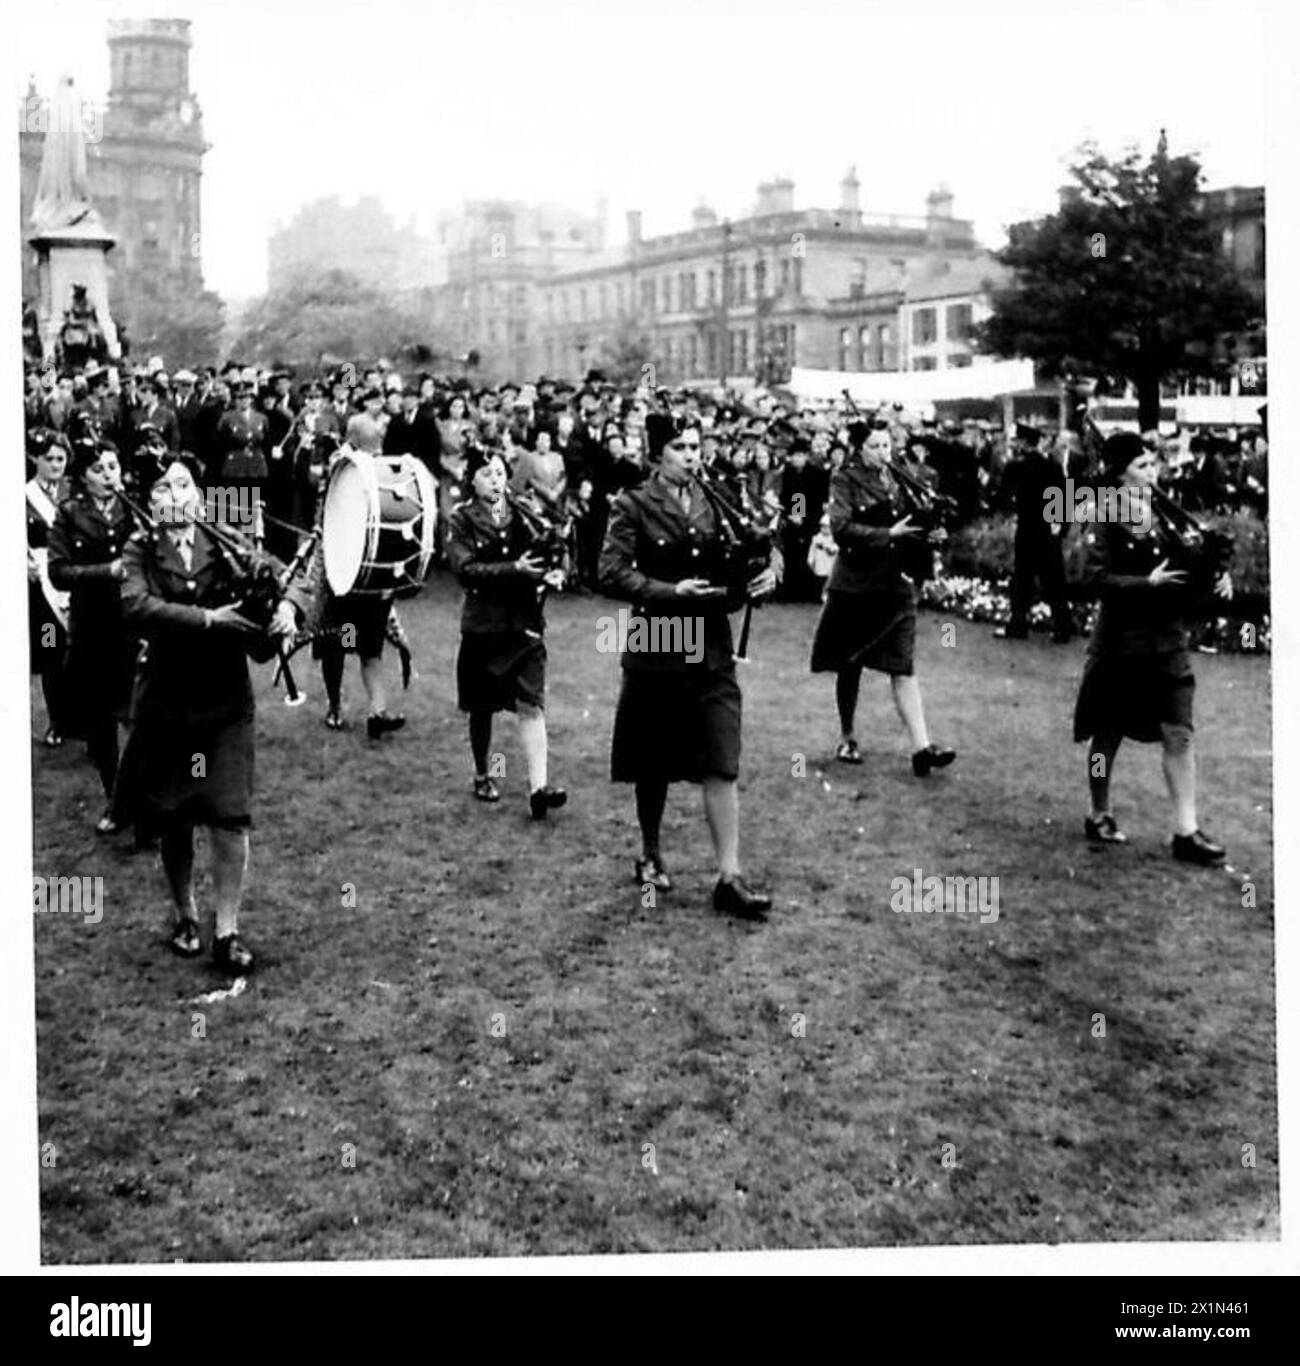 DIE ATS-BAND GIBT IHRE ABSCHIEDSDARBIETUNG: Eine ATS Piper's Band spielt vor riesigen Menschenmengen auf dem Rasen des Rathauses, Belfast, British Army Stockfoto